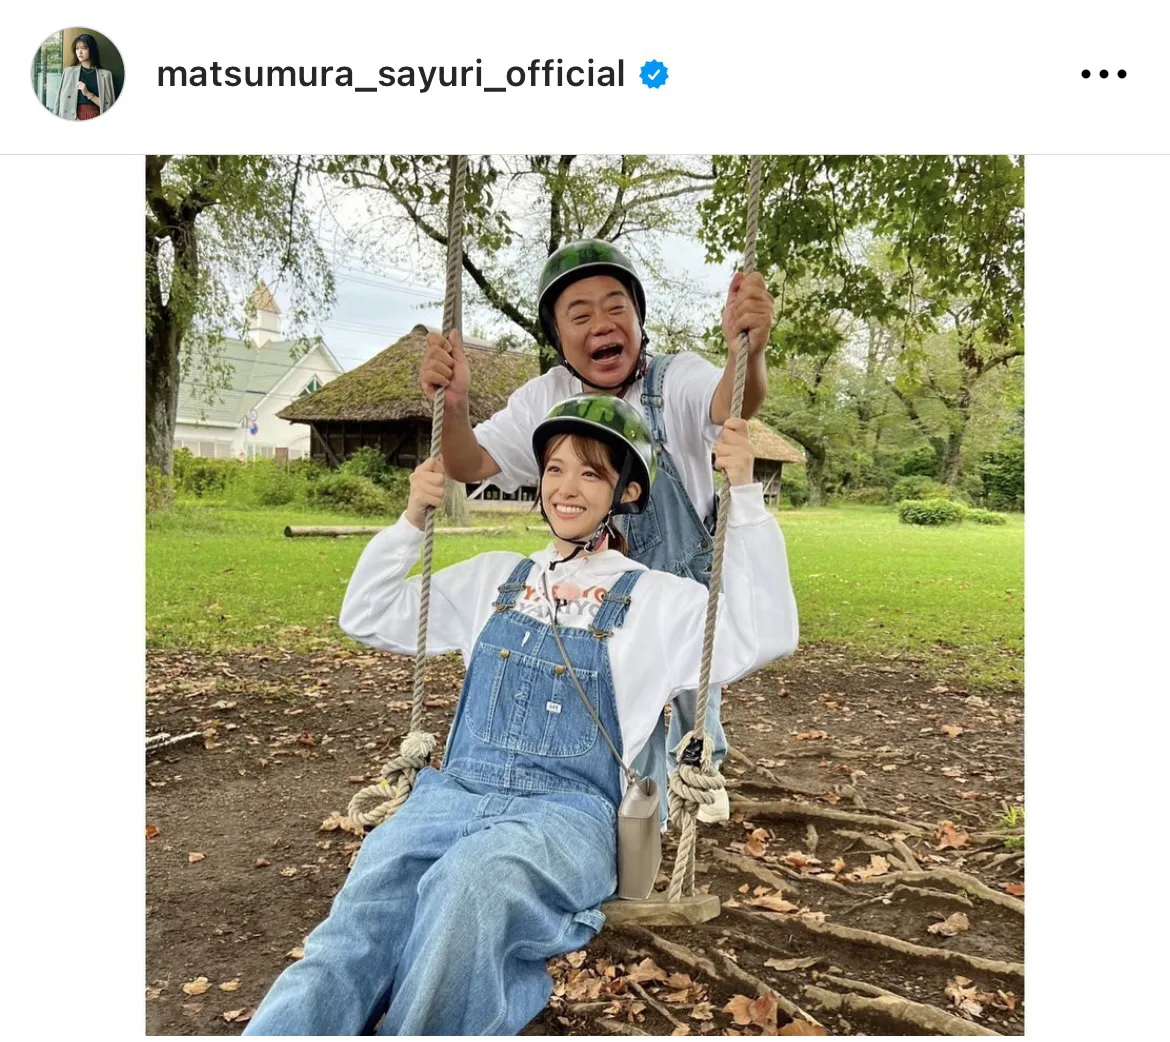 ※松村沙友理公式Instagram(matsumura_sayuri_official)より